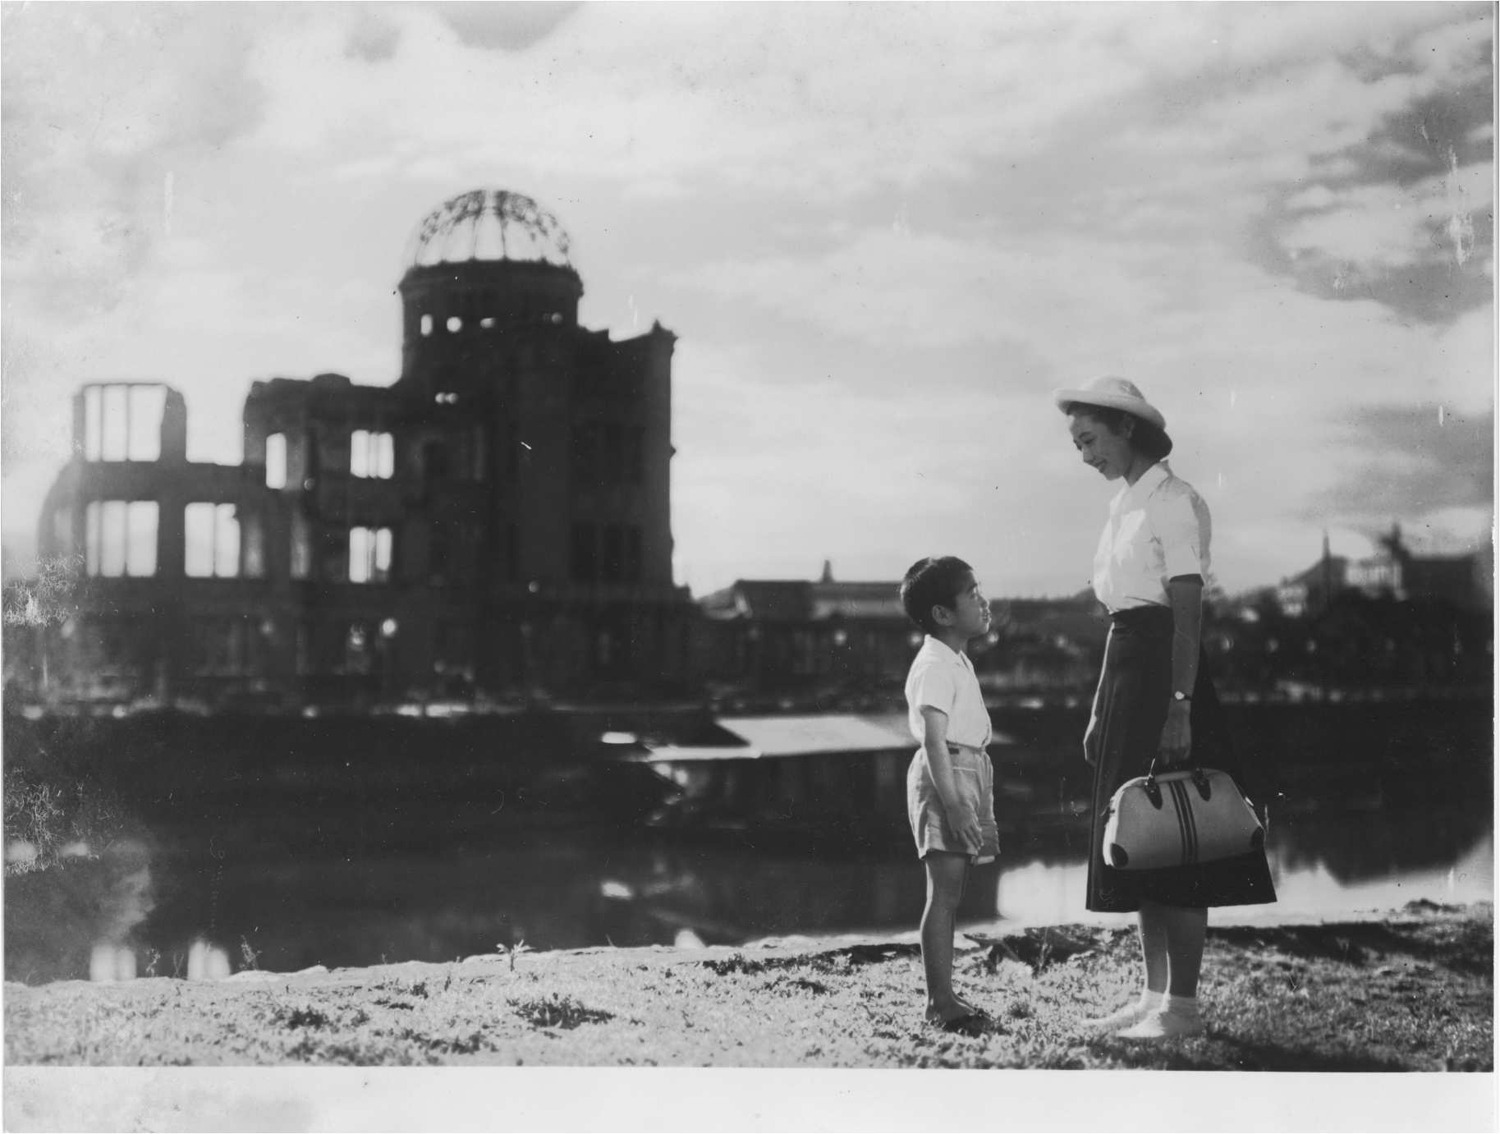 ۱۰ فیلم دیدنی و تاثیرگذار در مورد بمب اتمی برای کسانی که از فیلم «اوپنهایمر» لذت بردند